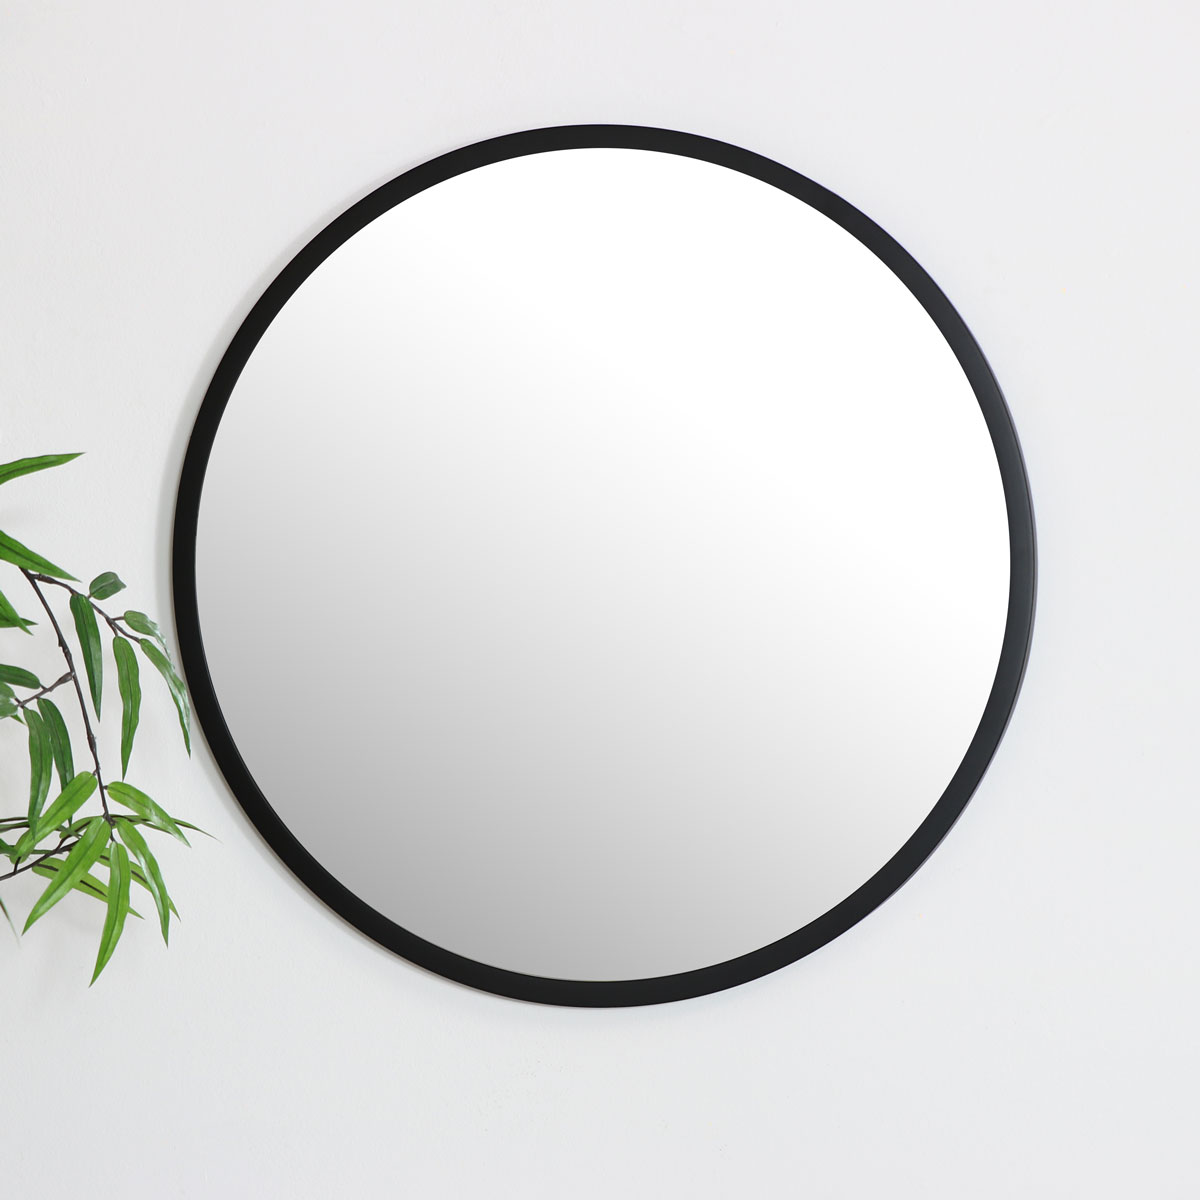 Round Black Wall Mirror 50cm X, Round Mirror With Black Frame 9 6 In